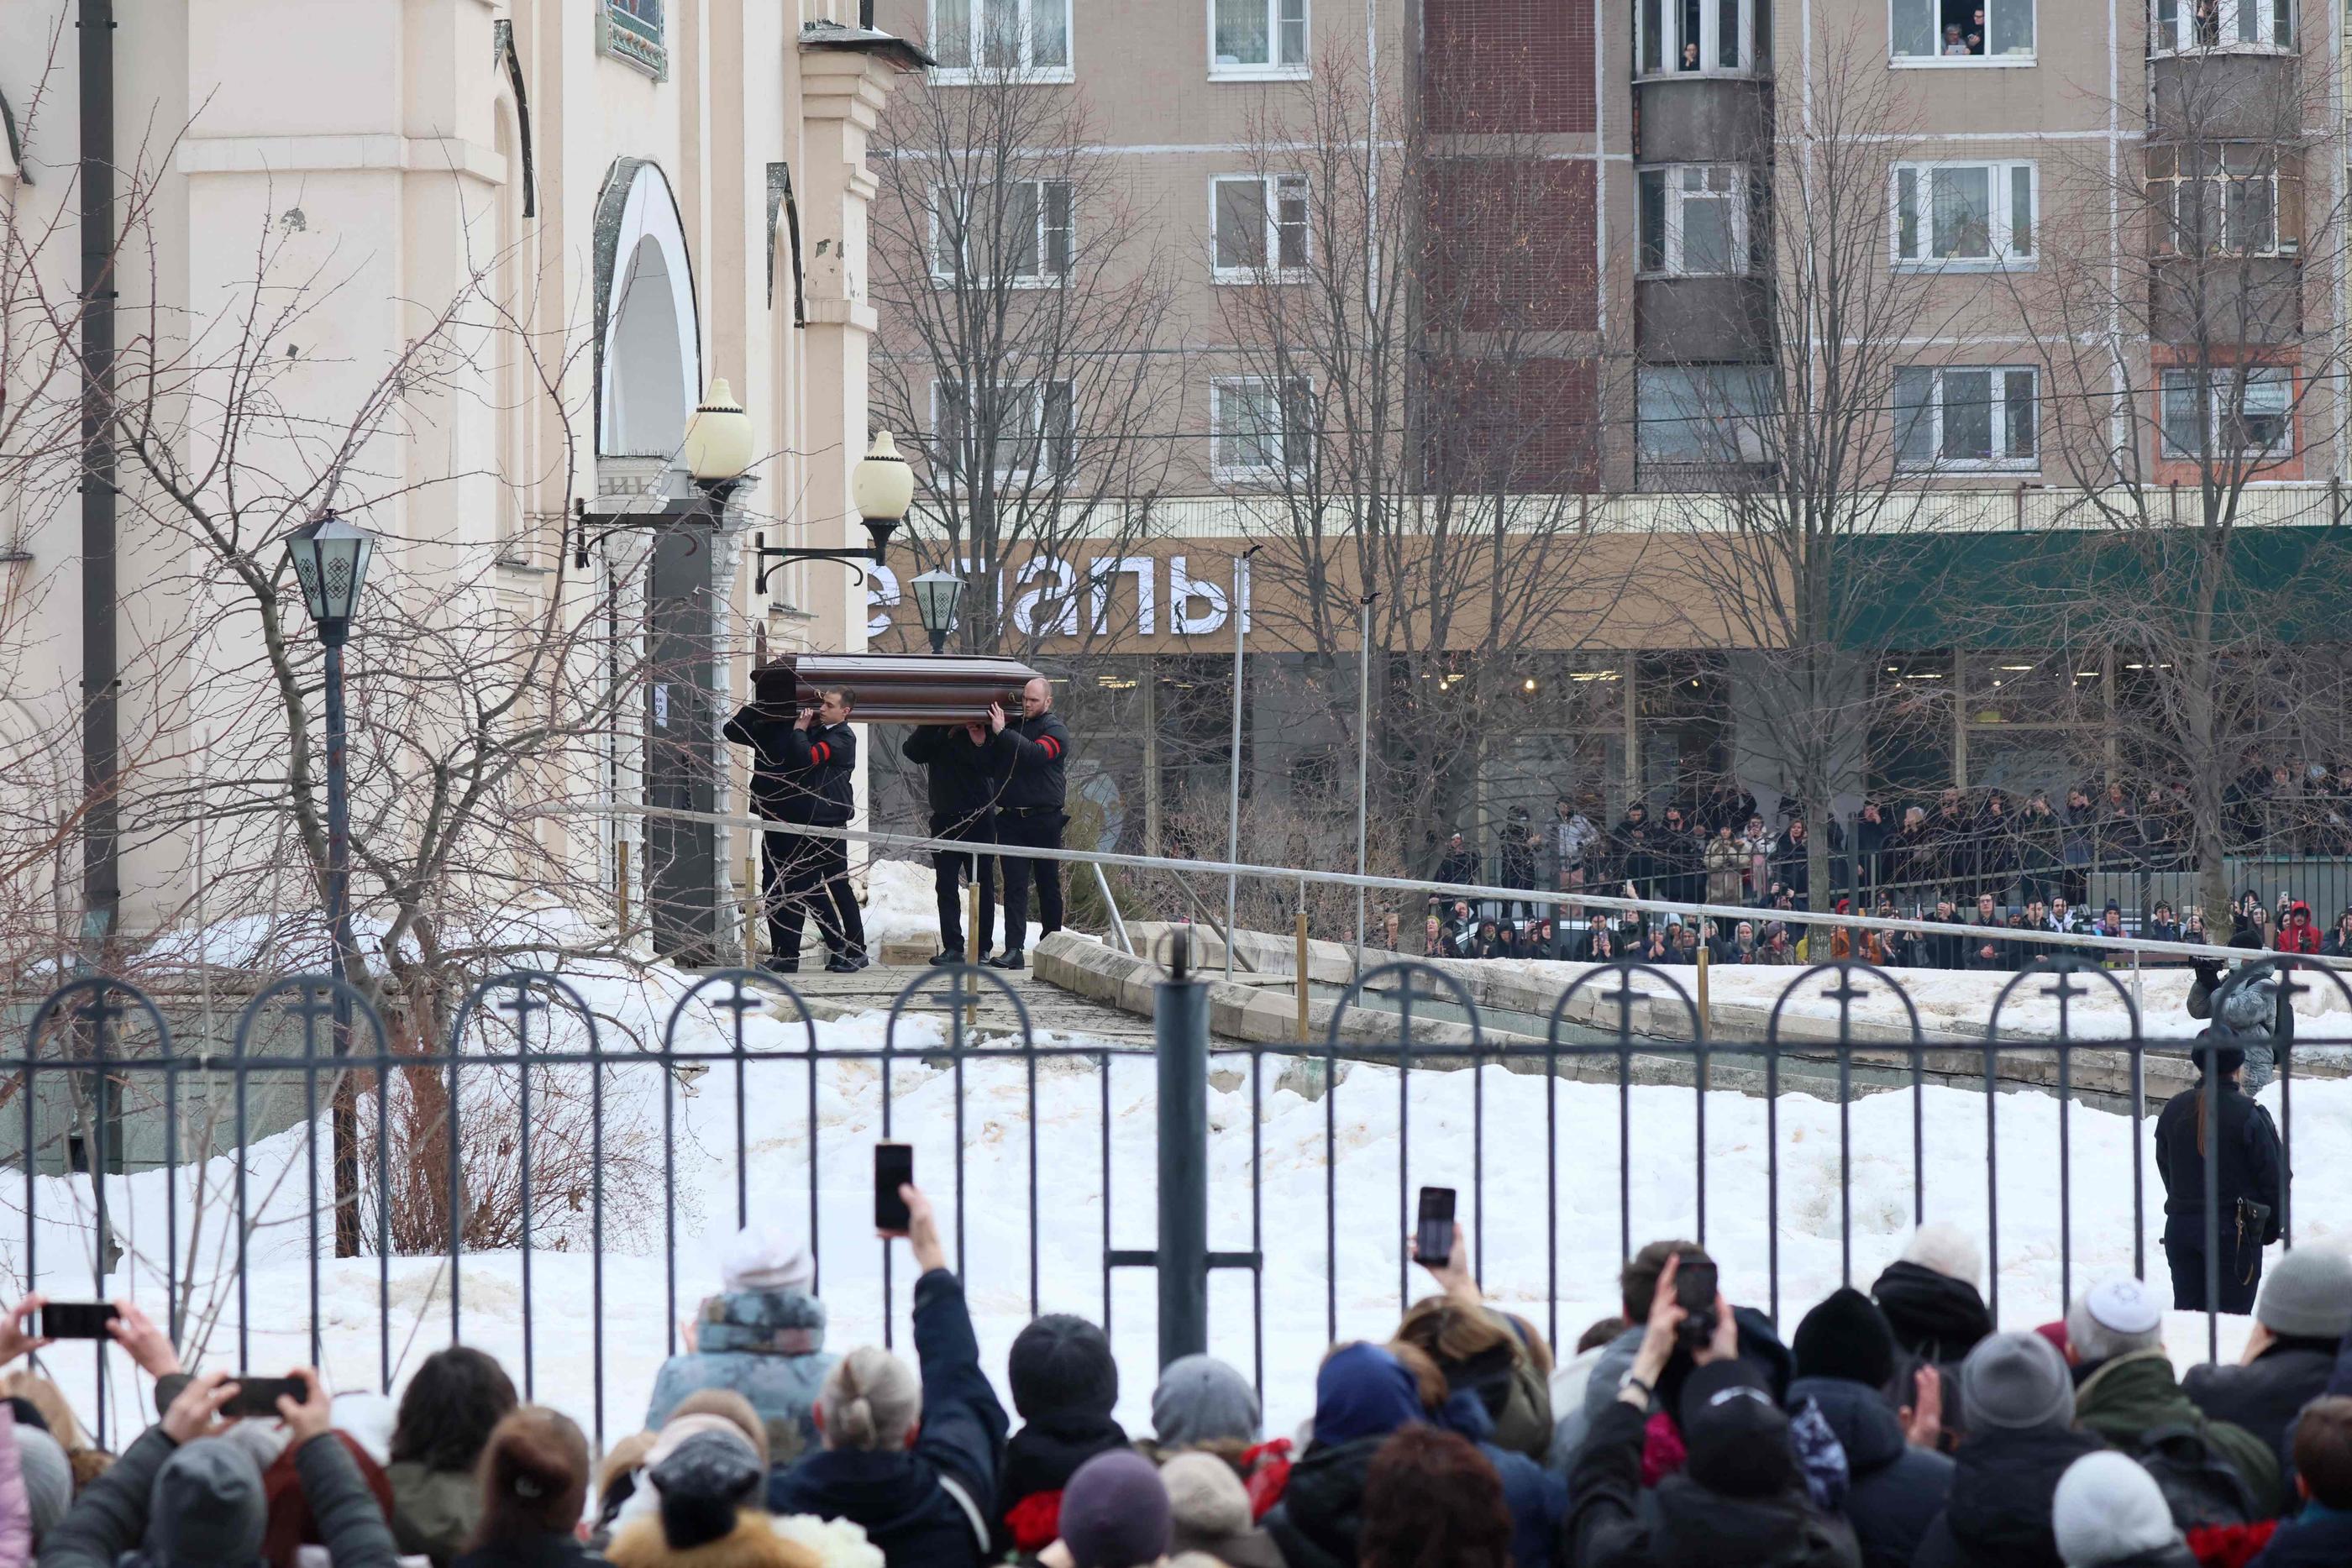 Des milliers de personnes ont assisté aux obsèques de l'opposant russe Alexeï Navalny. AFP/Stringer